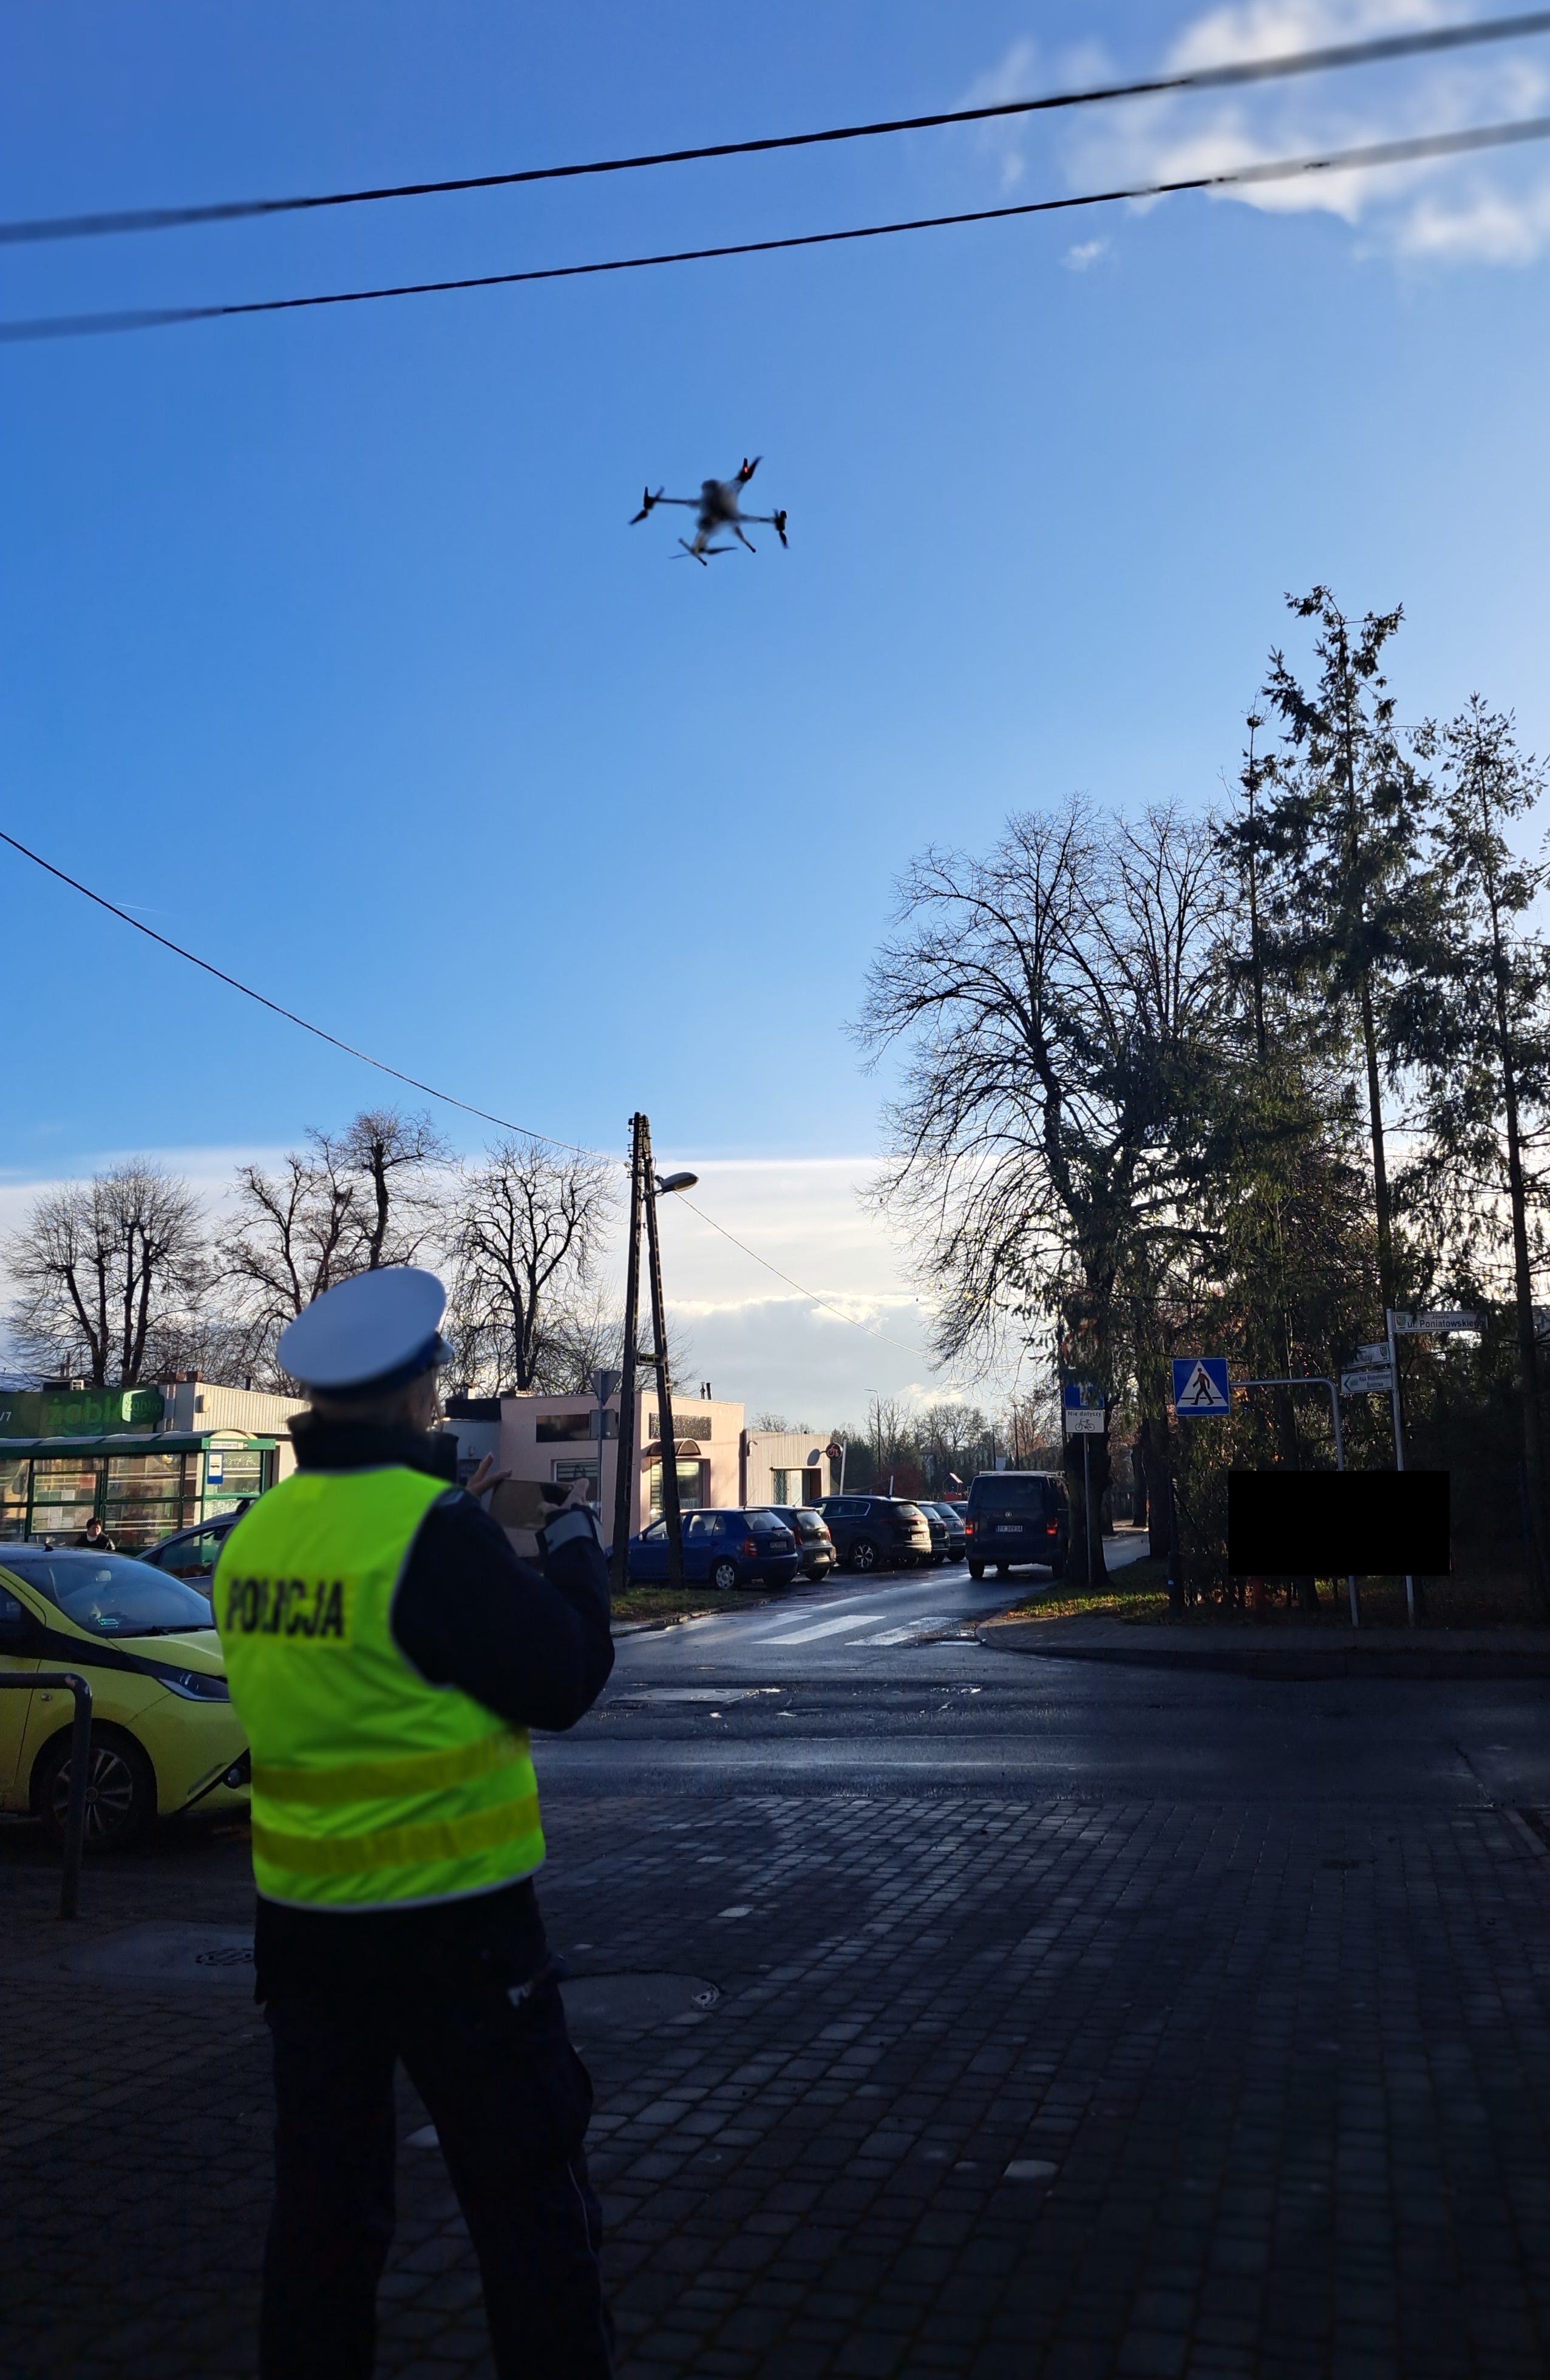 Zdjęcie przedstawia policjanta obsługującego drona